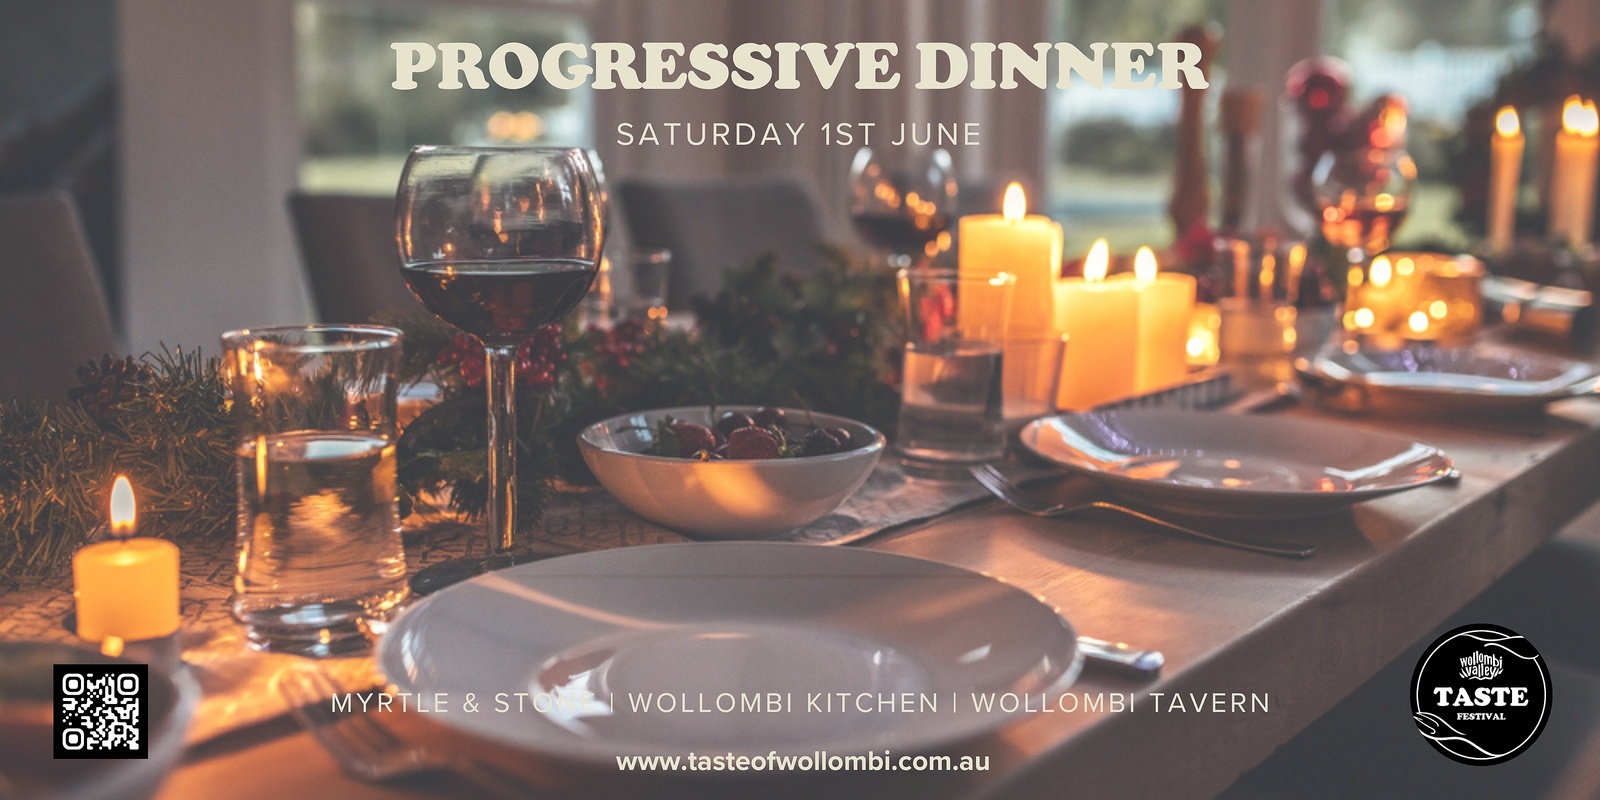 Banner image for Wollombi Taste Festival Progressive Dinner